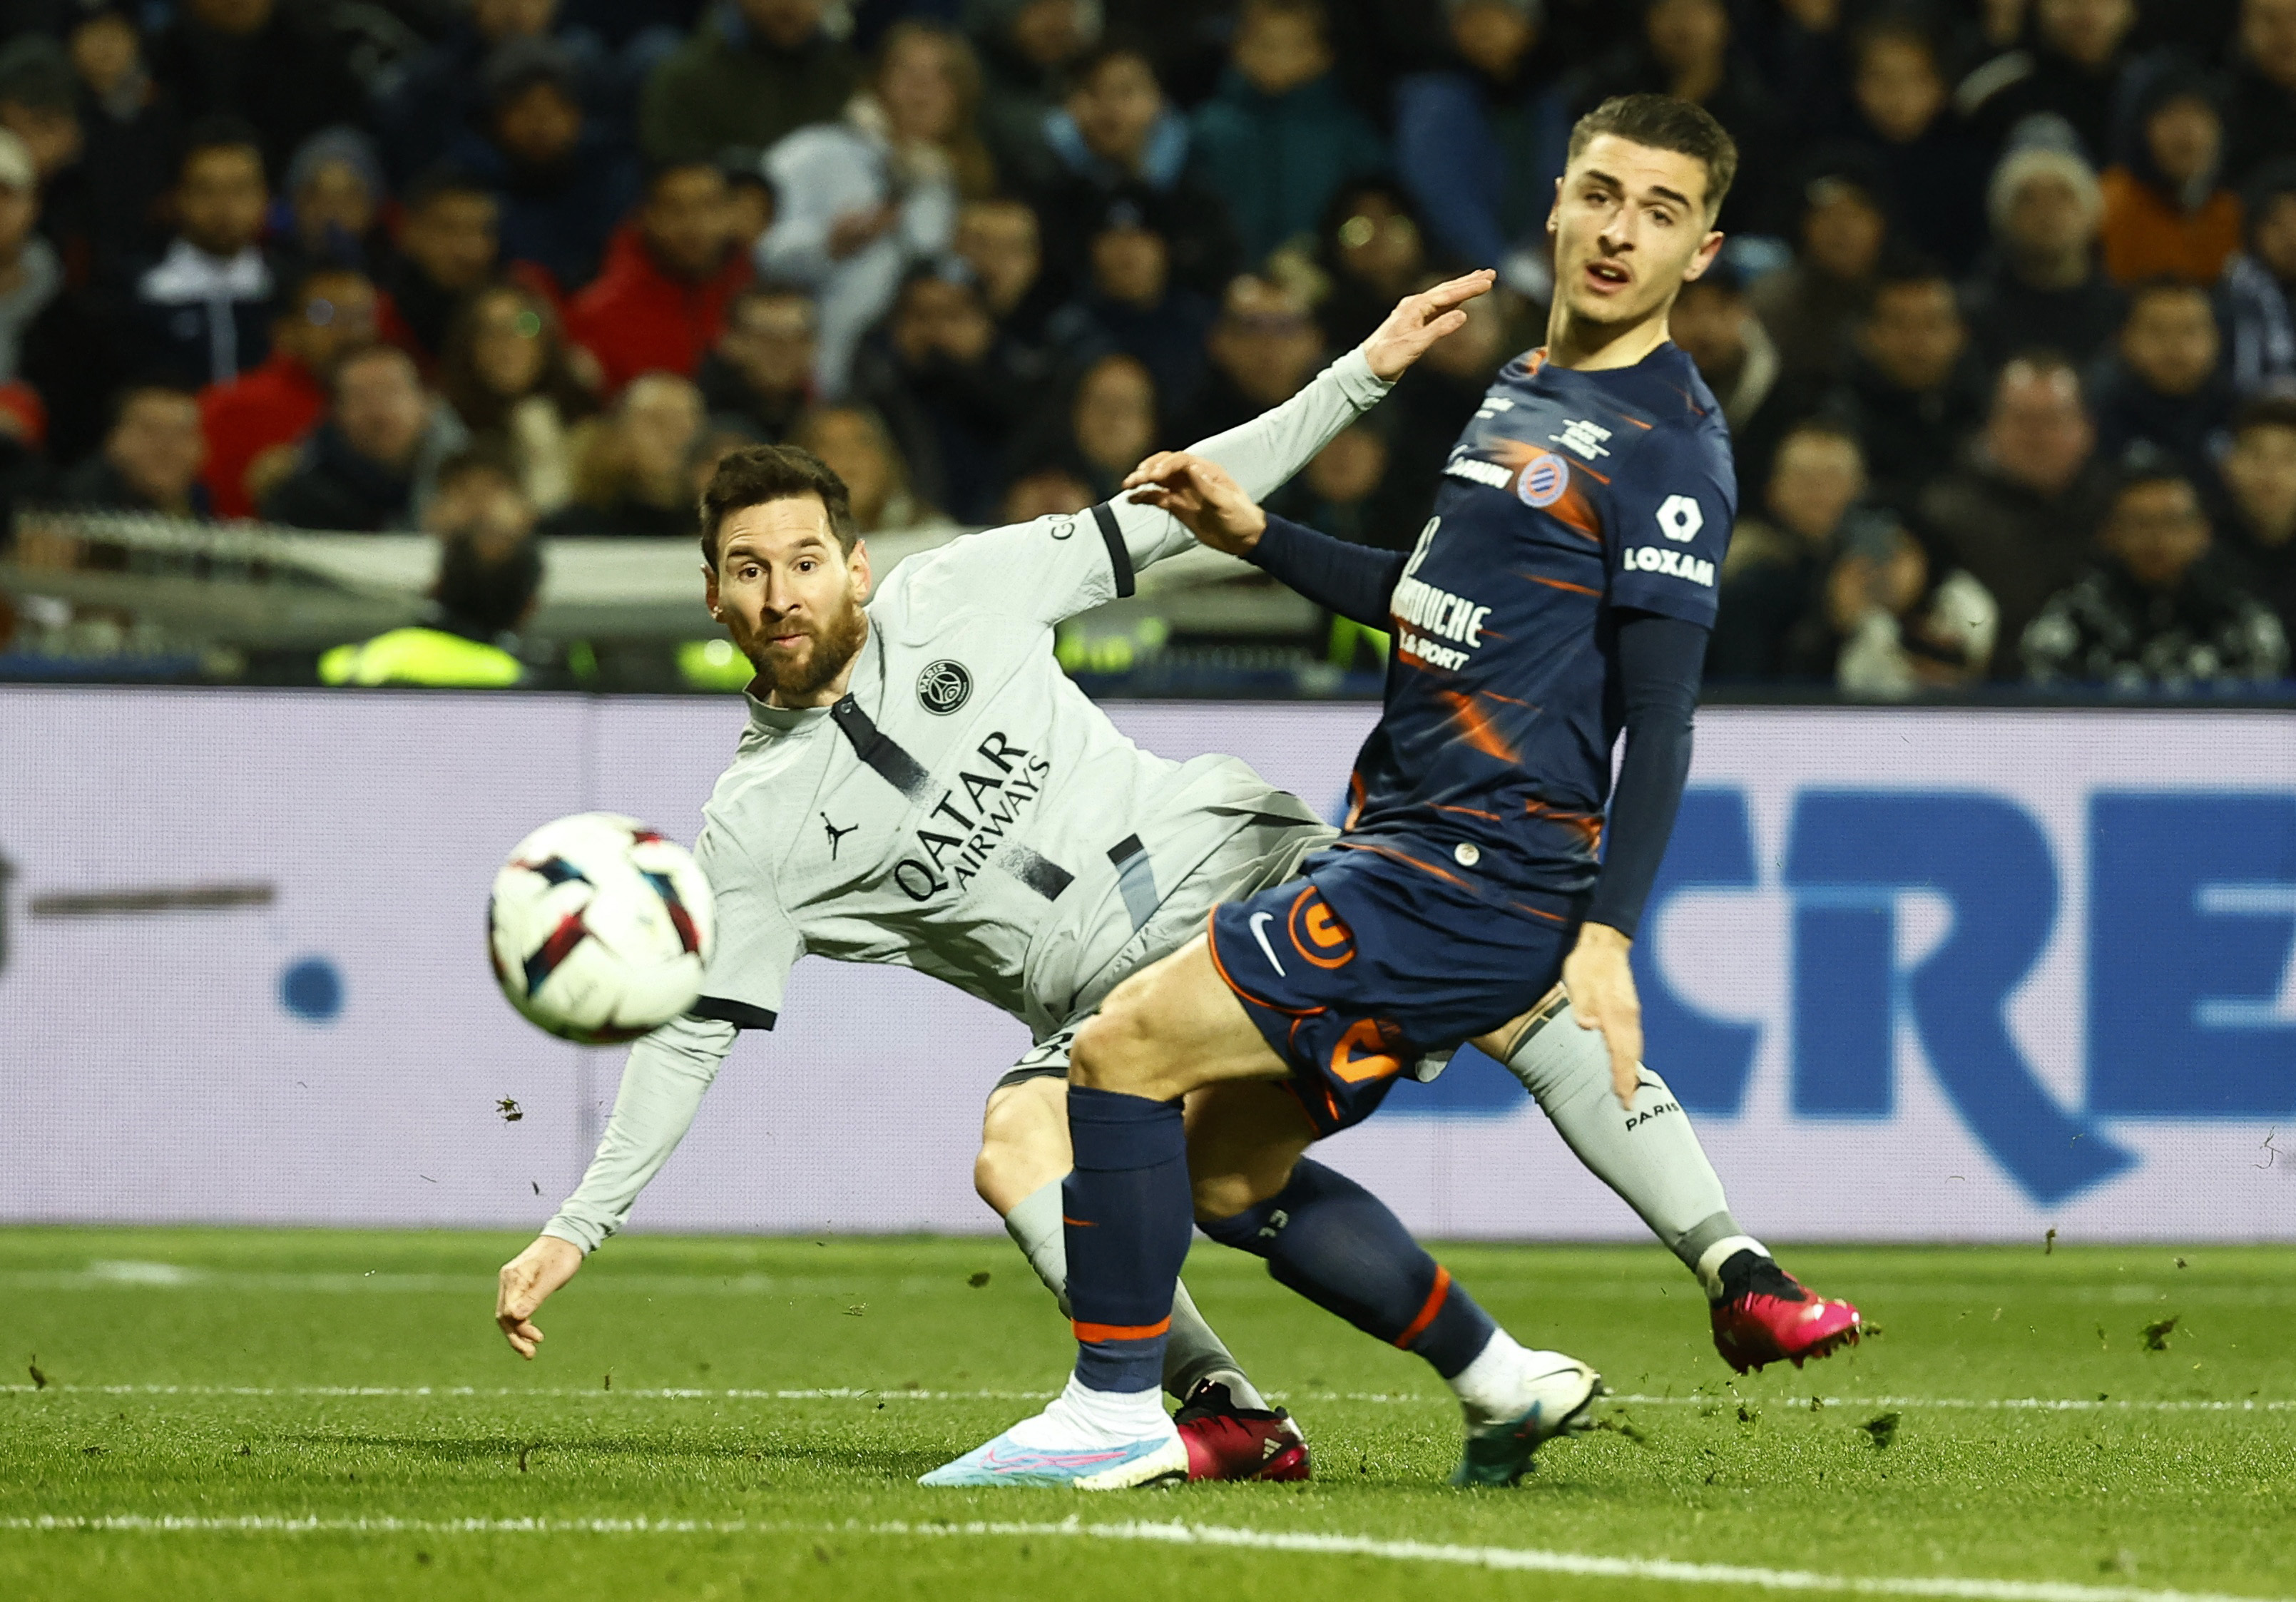 Lionel Messi tuvo un gran partido ante Montpellier. Marcó un golazo y tuvo varias chances de anotar para el PSG (REUTERS/Eric Gaillard)